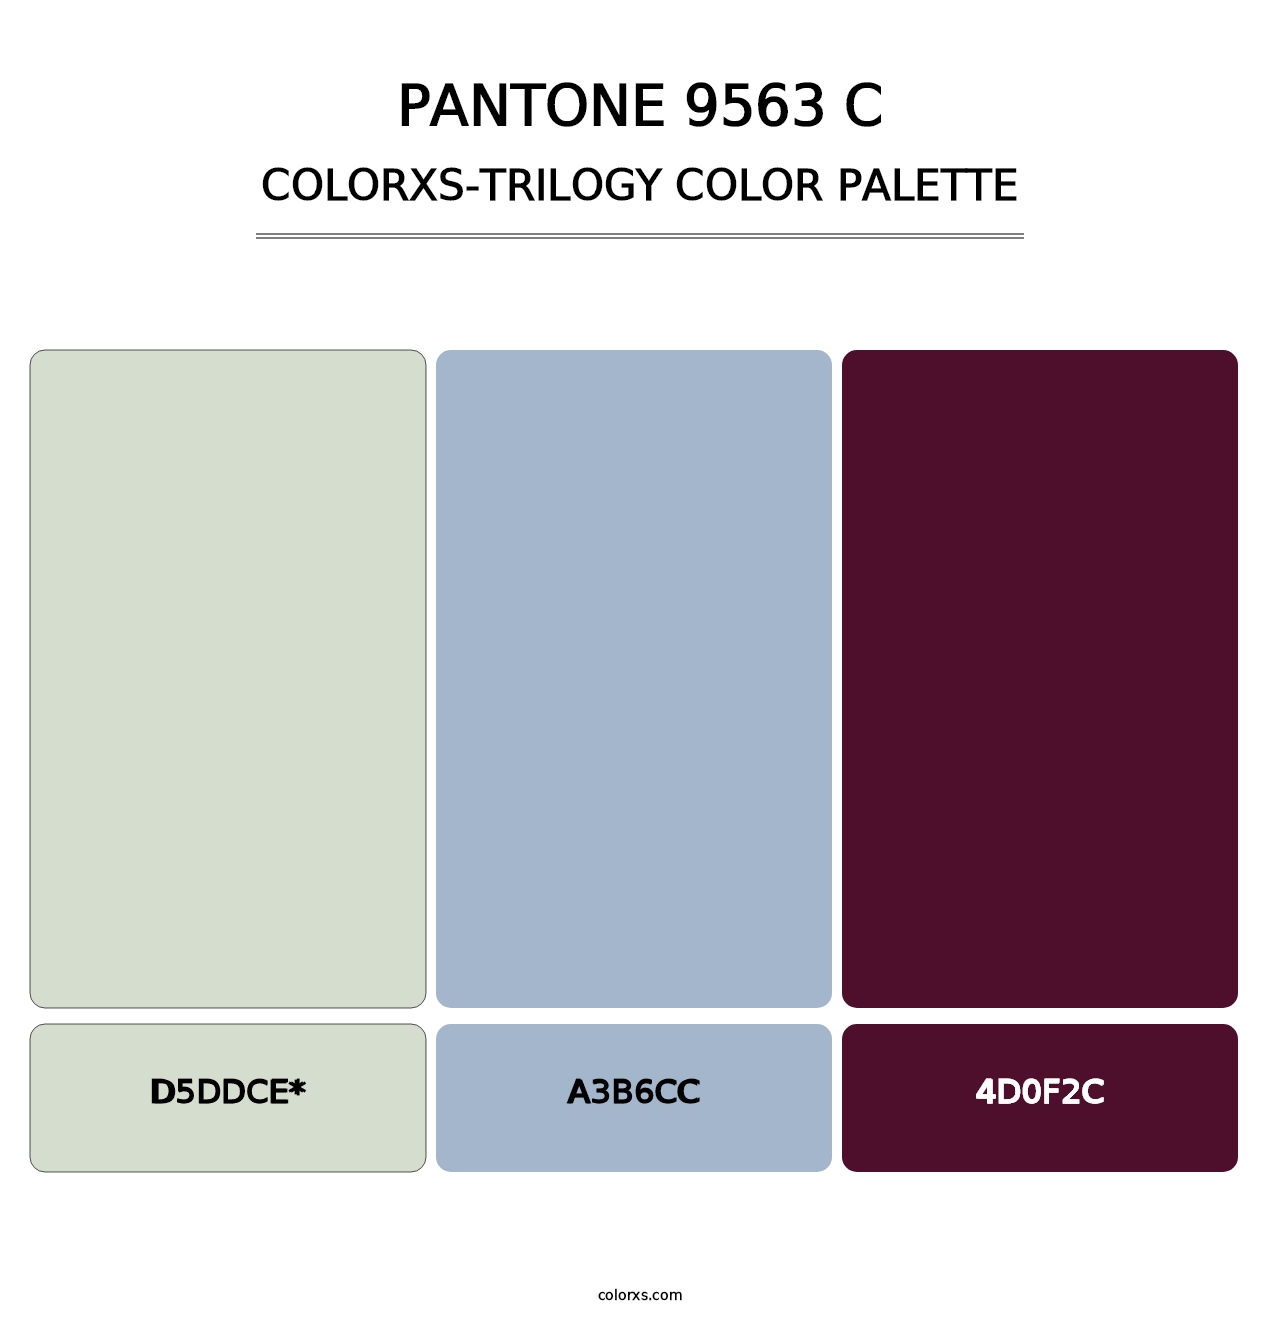 PANTONE 9563 C - Colorxs Trilogy Palette